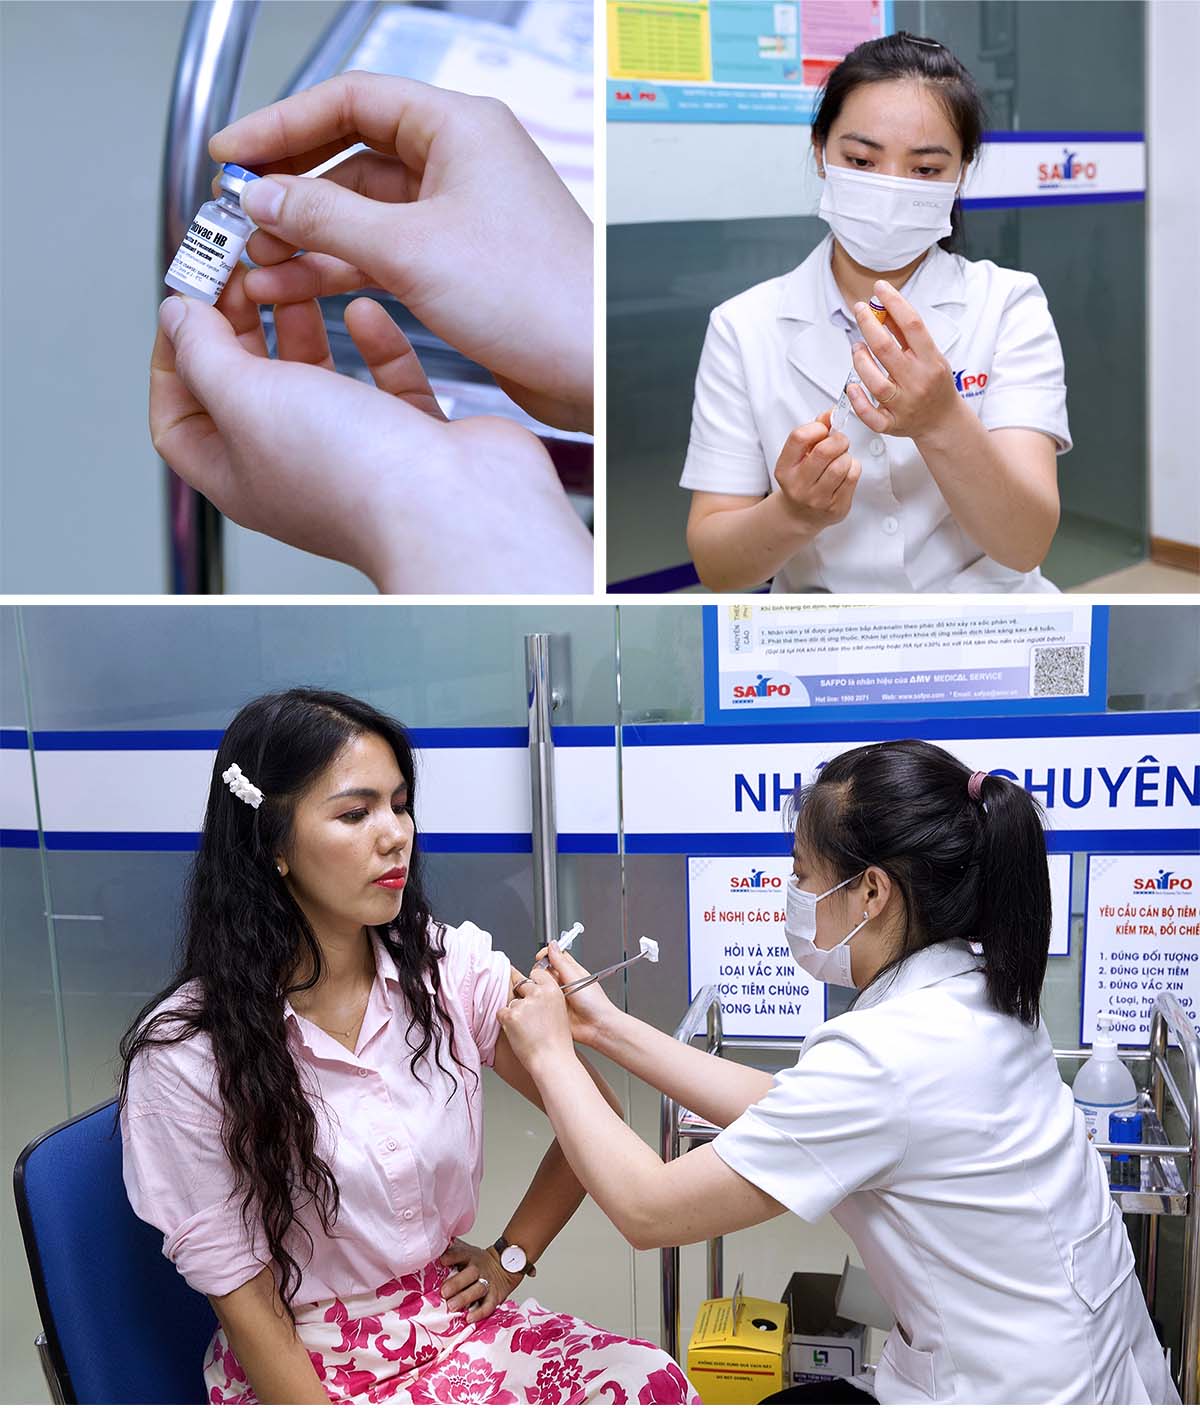 Nhân viên y tế cẩn thận chuẩn bị vắc-xin bạch hầu trước khi tiêm, đảm bảo tất cả vắc-xin đều đạt chất lượng và tiêm cho khách hàng, thực hiện đúng quy trình an toàn tiêm chủng